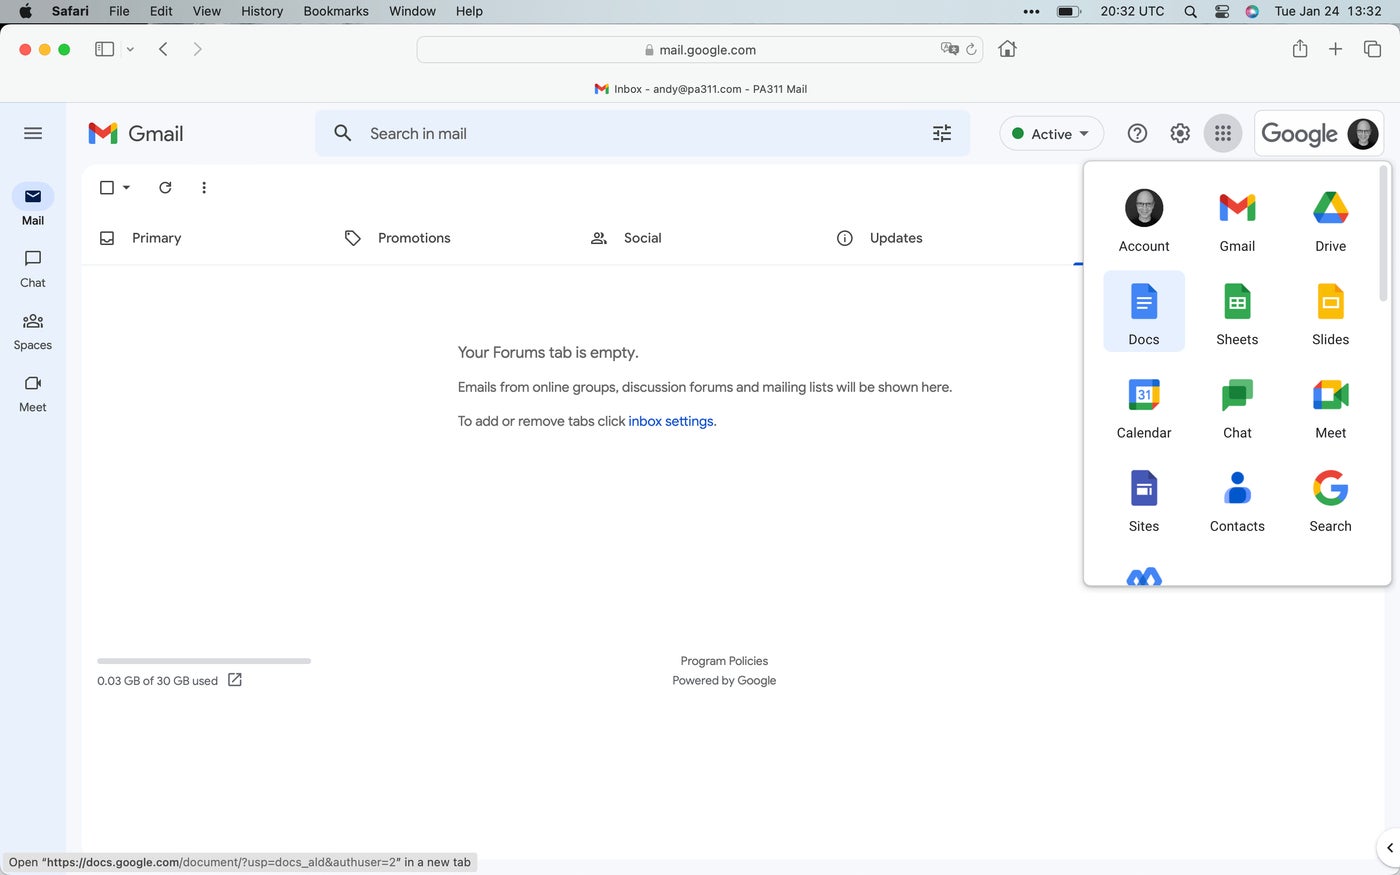 Google Applications menu open in Safari